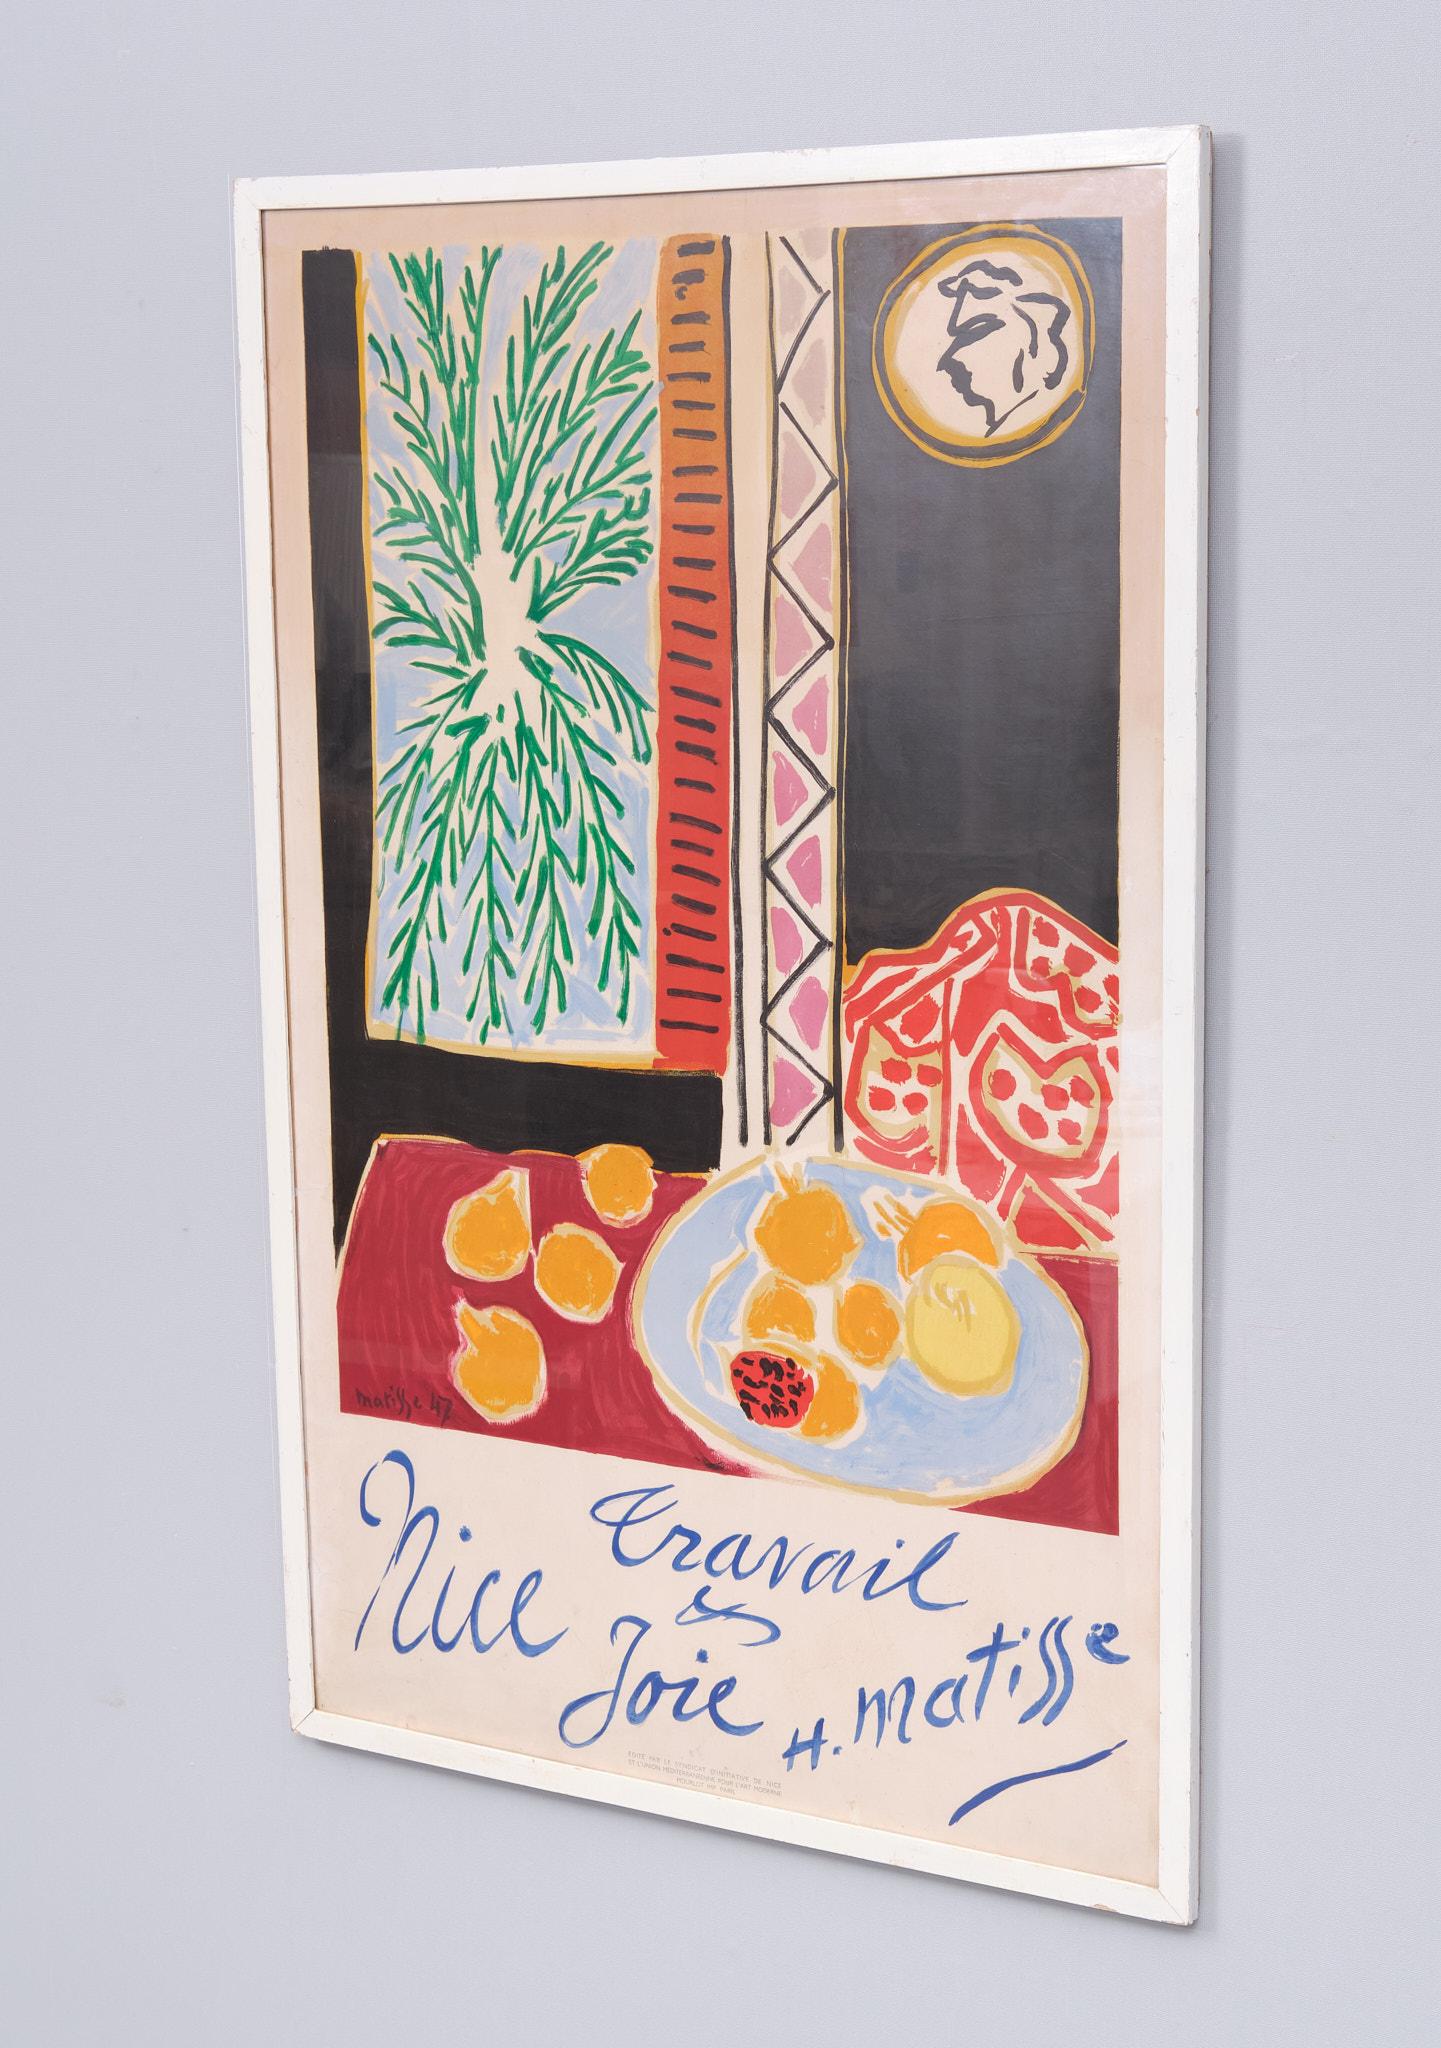 Nice Travail et Joie ist ein französisches Reiseplakat des Meisters Henri Matisse aus dem Jahr 1947. Dieses Reiseplakat wurde exklusiv für die Stadt Nizza geschaffen, in der sich Matisse gegen Ende seines Lebens niederließ. Das Plakat trägt den